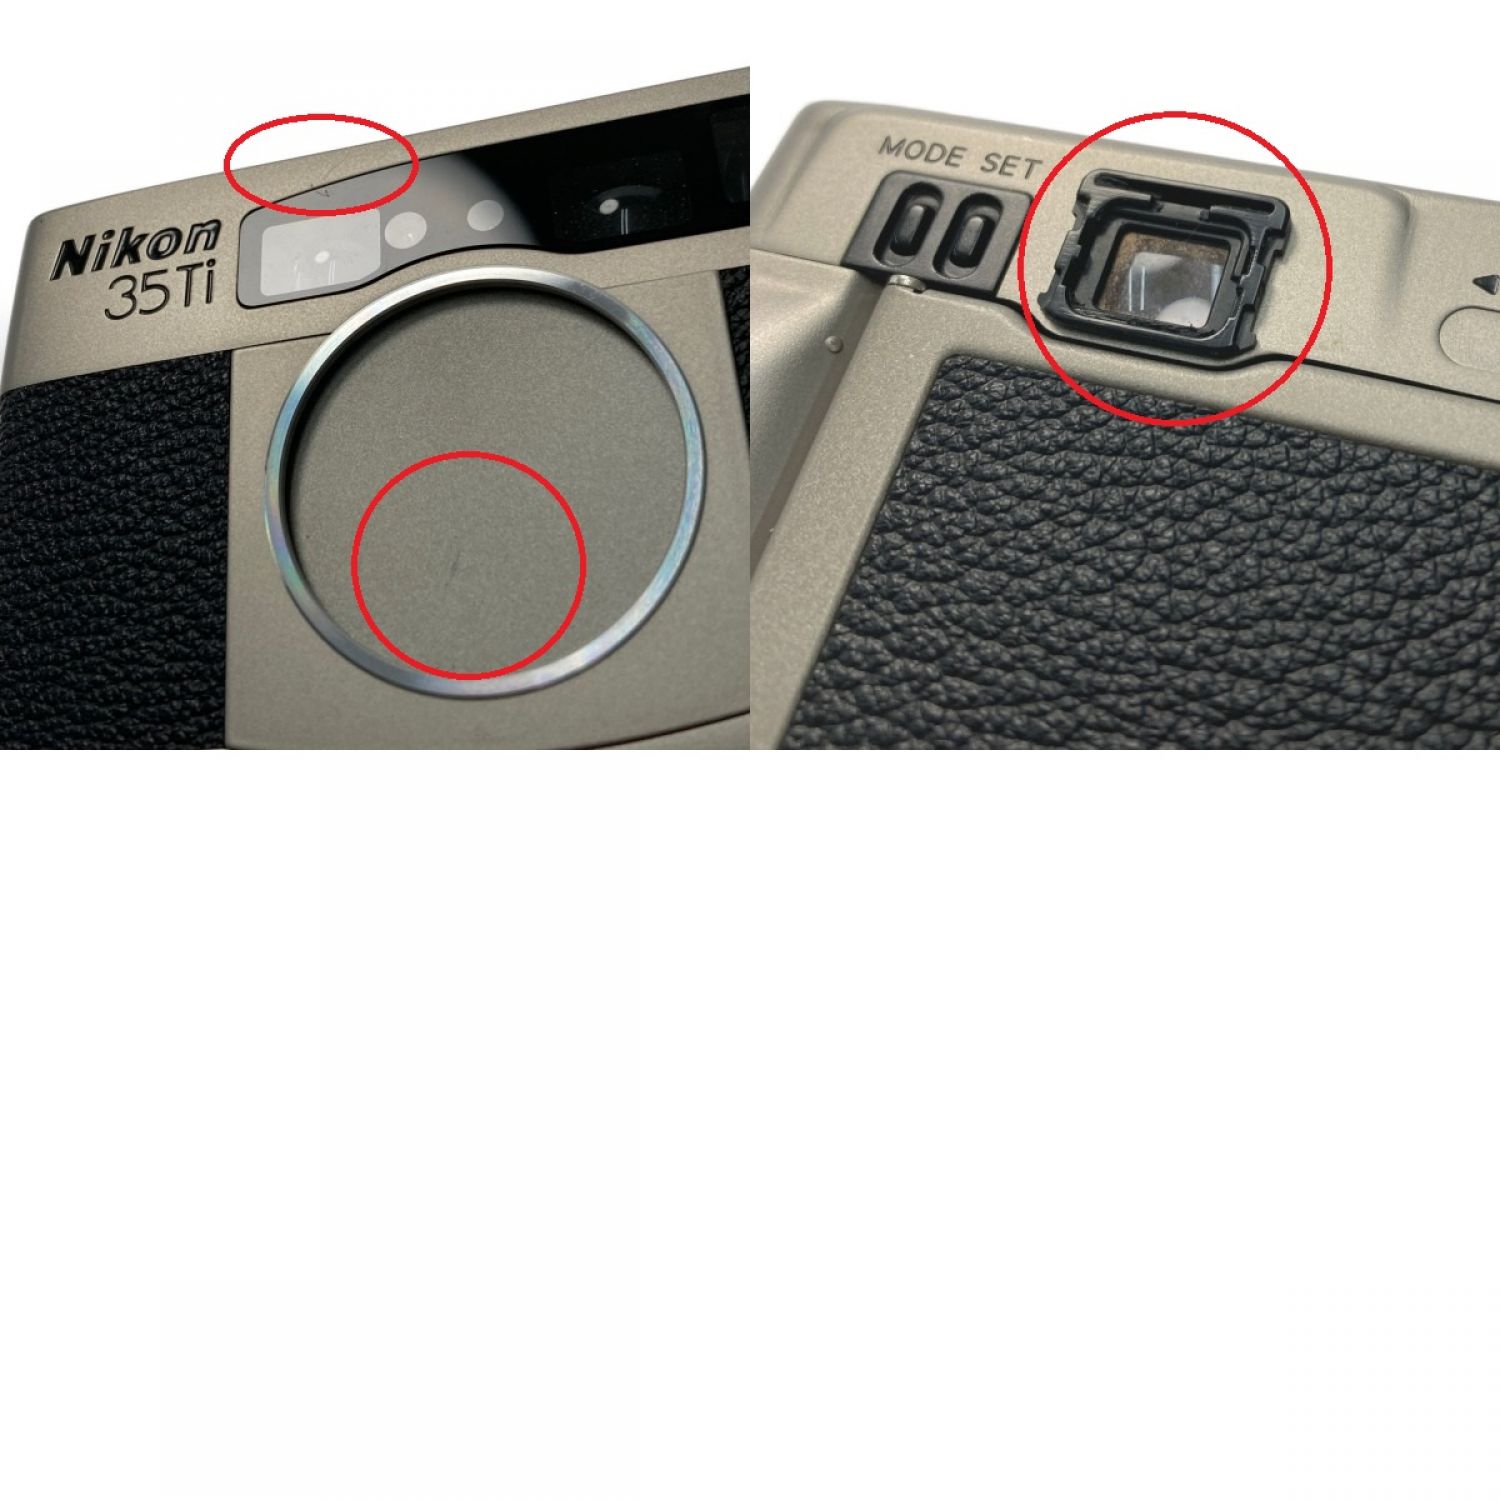 Nikon ニコン 35Ti コンパクトフィルムカメラ